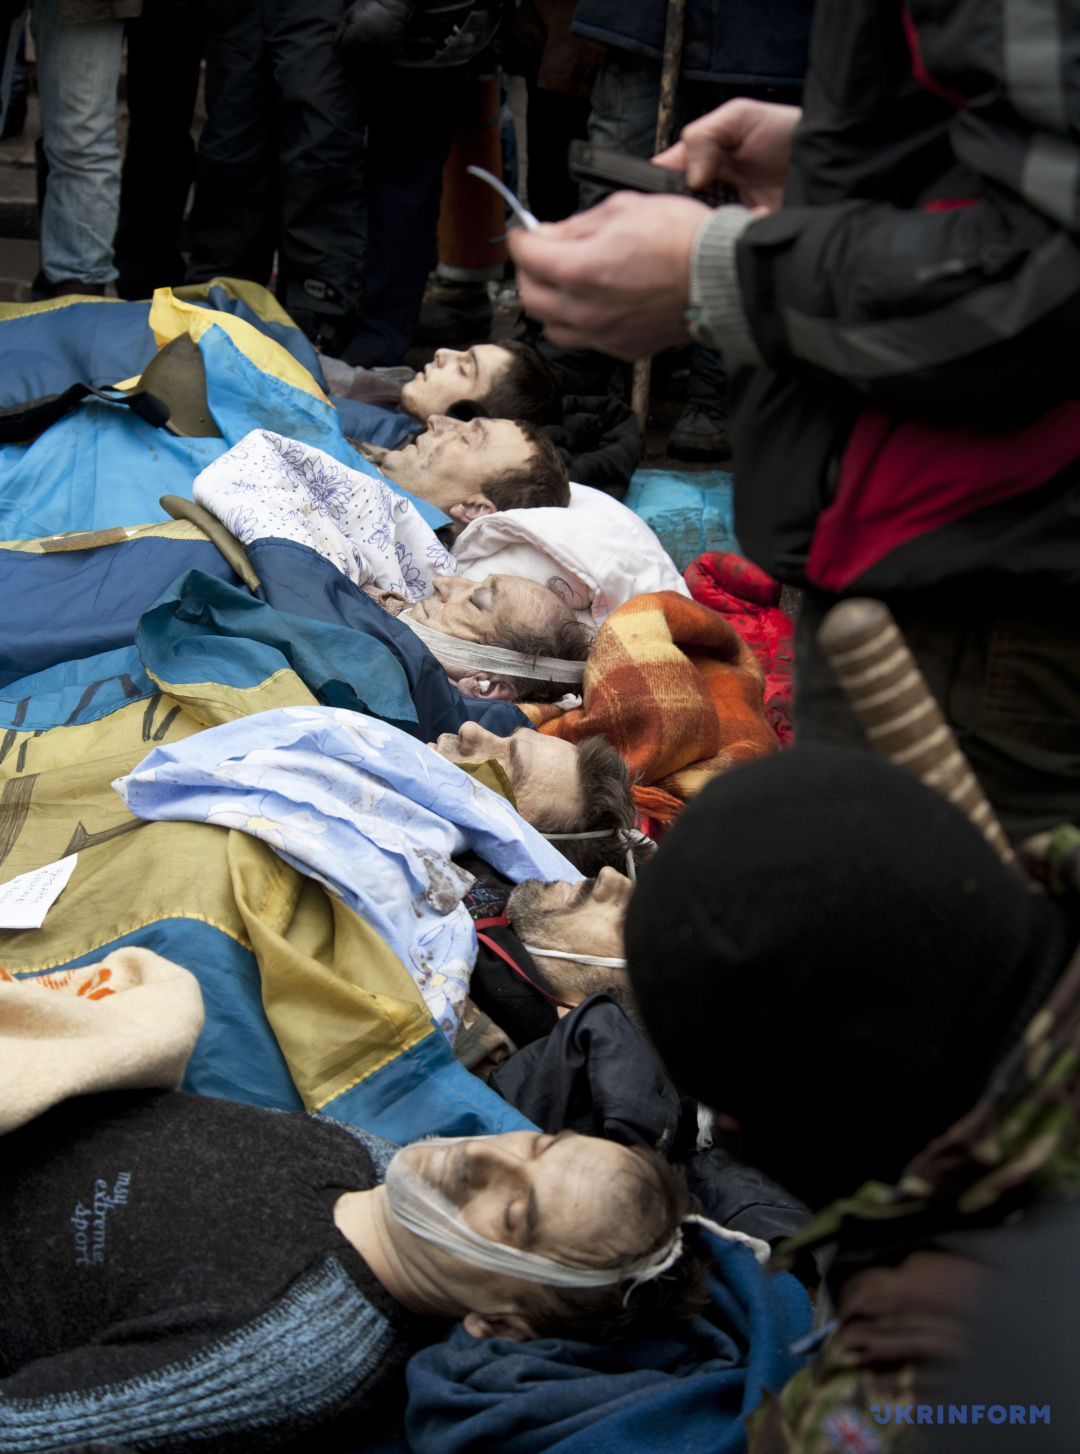 Auf dem Majdan Nesaleschnosti liegen die Leichen von Demonstranten, die bei Auseinandersetzungen mit Ordnungskräften durch Schussverletzungen ums Leben kamen, Kyjiw, 20. Februar 2014. / Foto von Olena Chudjakowa